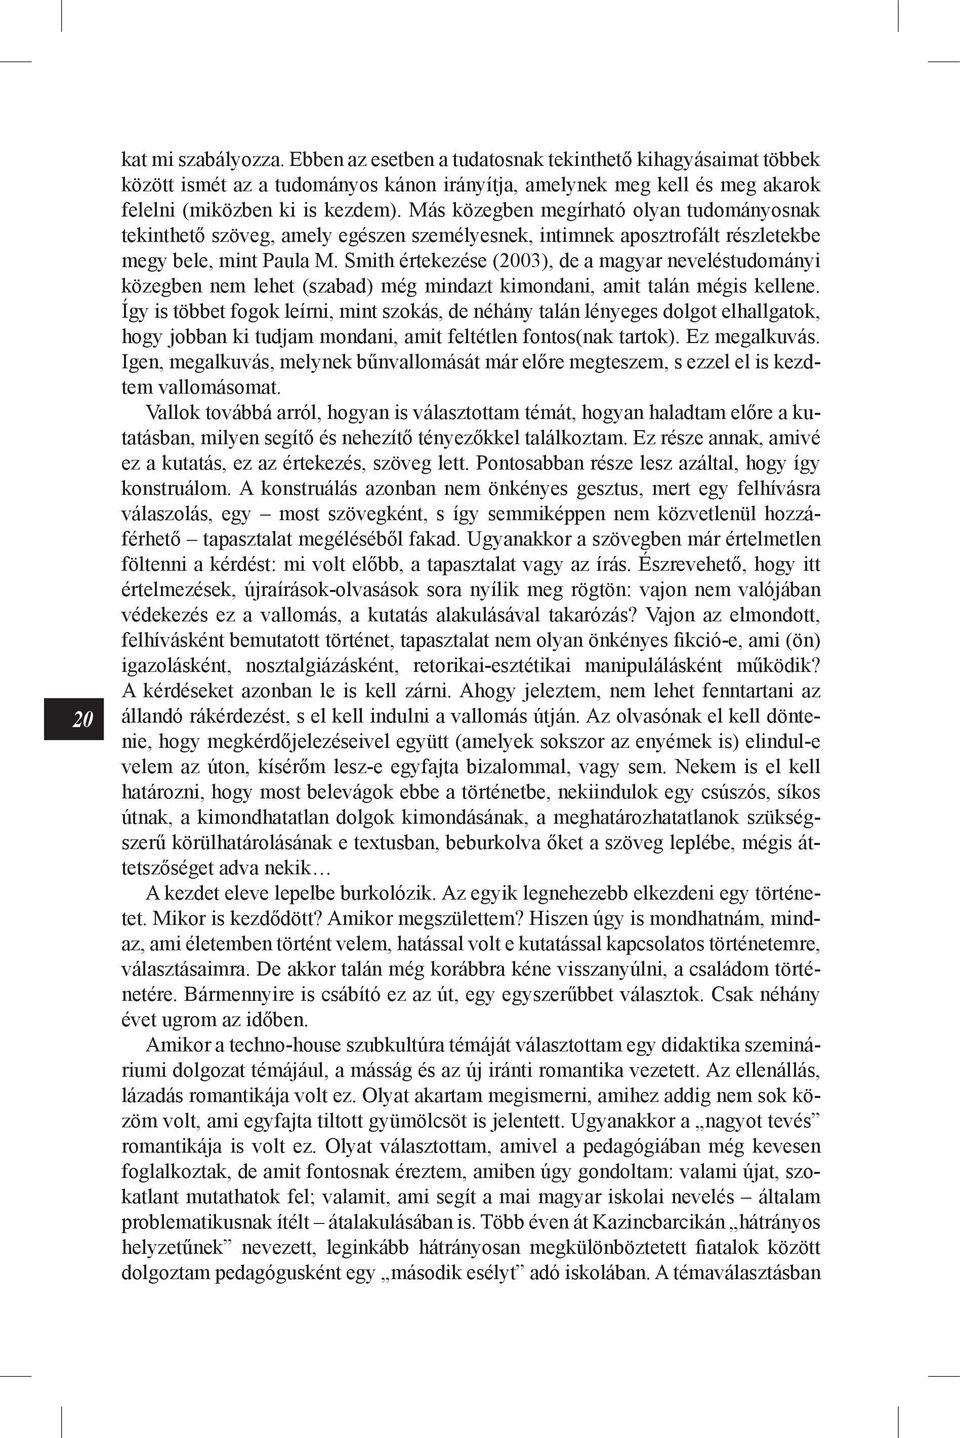 Smith értekezése (2003), de a magyar neveléstudományi közegben nem lehet (szabad) még mindazt kimondani, amit talán mégis kellene.